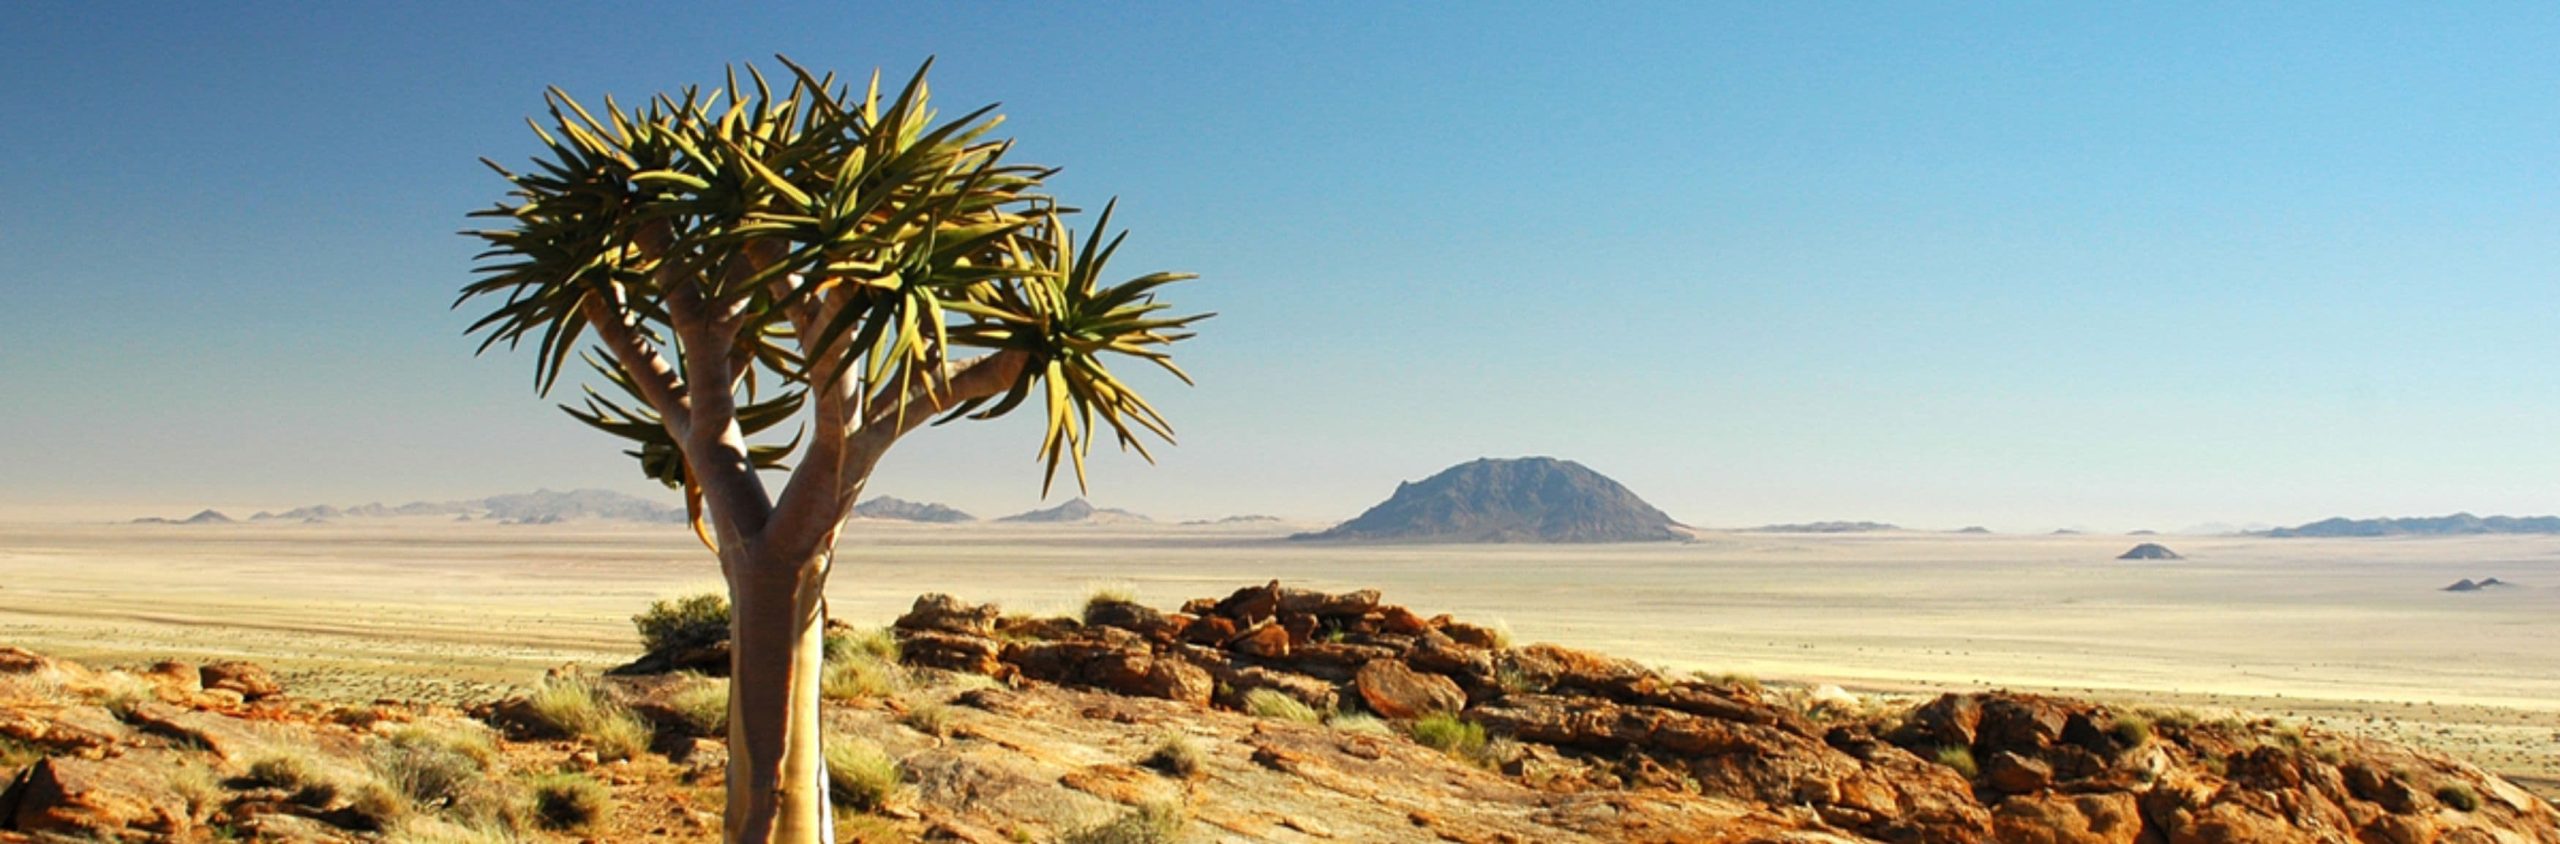 Karoo - semi-desert landscape